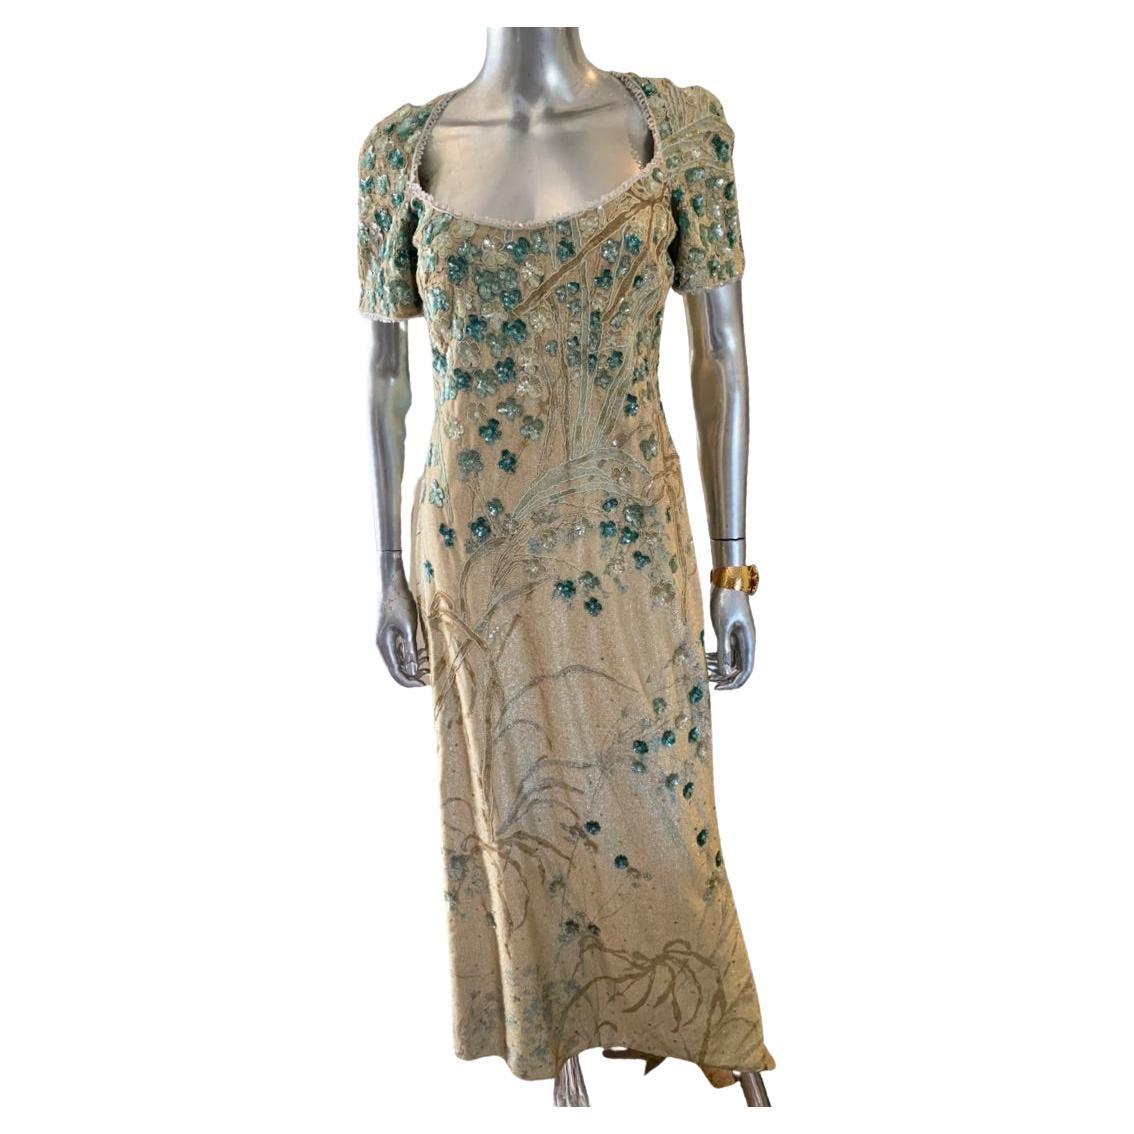 Badgley Mischka Enchanted Garden Metallic Beaded Sequin Evening Dress Size 10